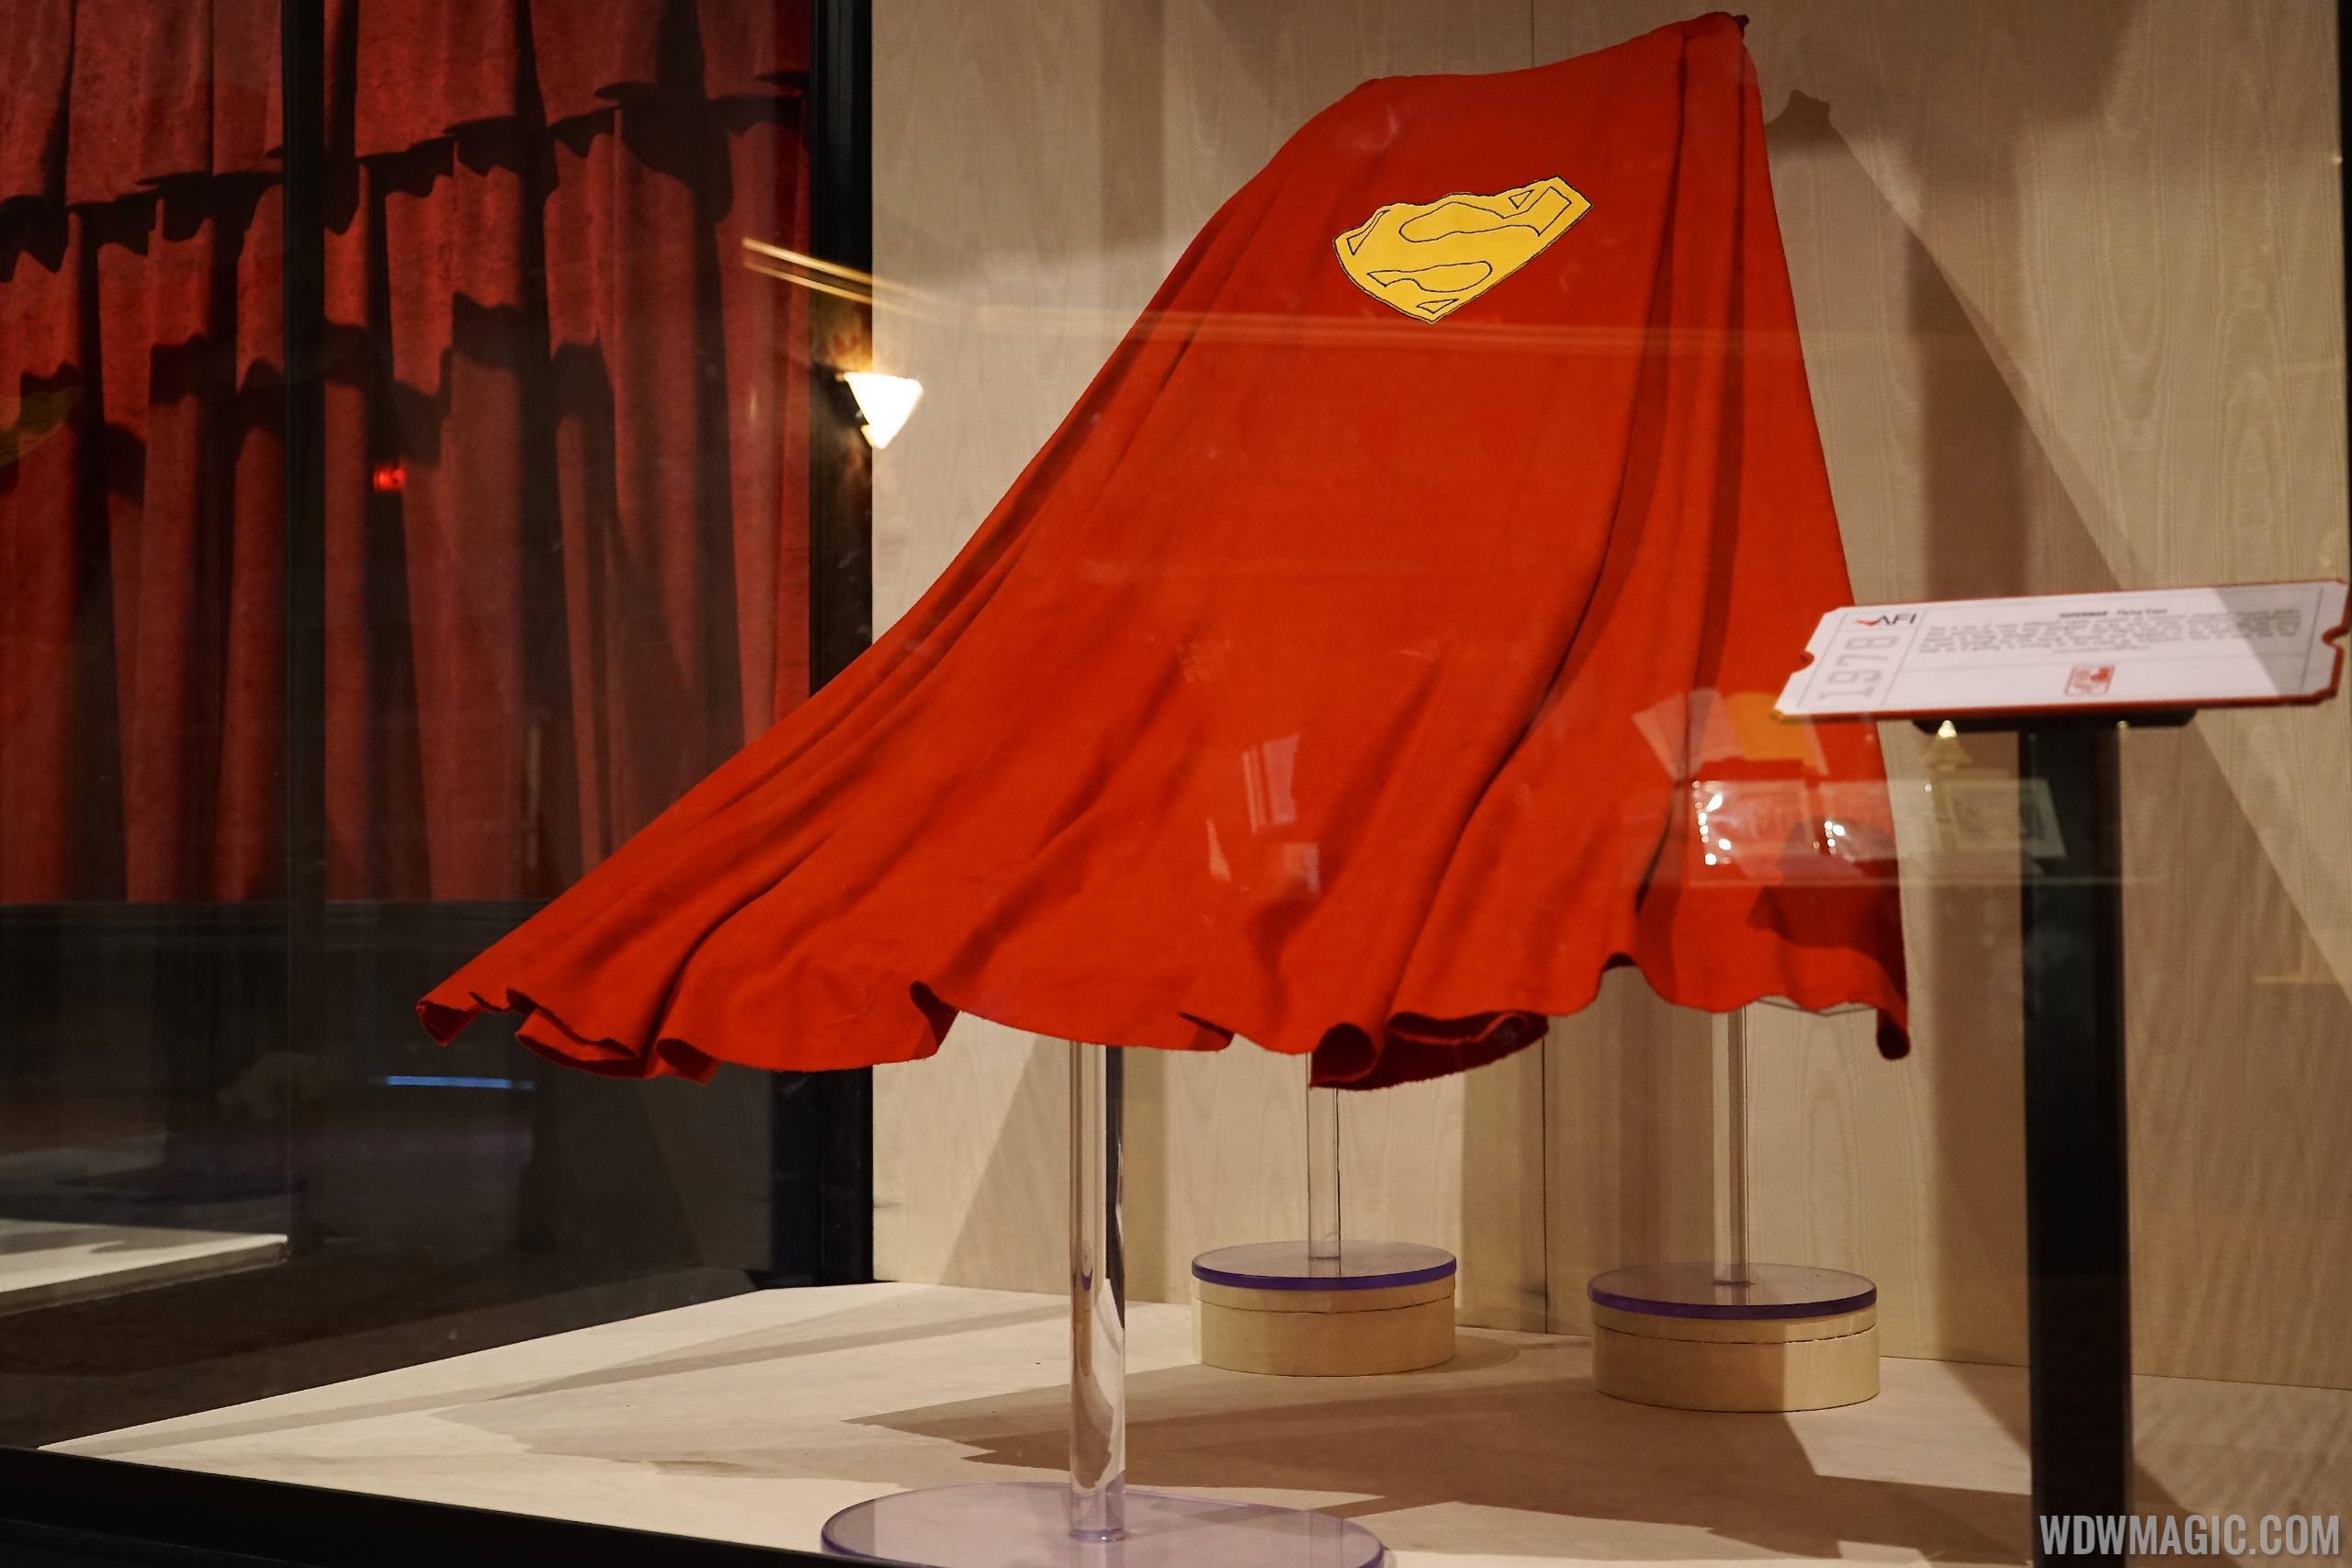 American Film Institute exhibit - Superman cape